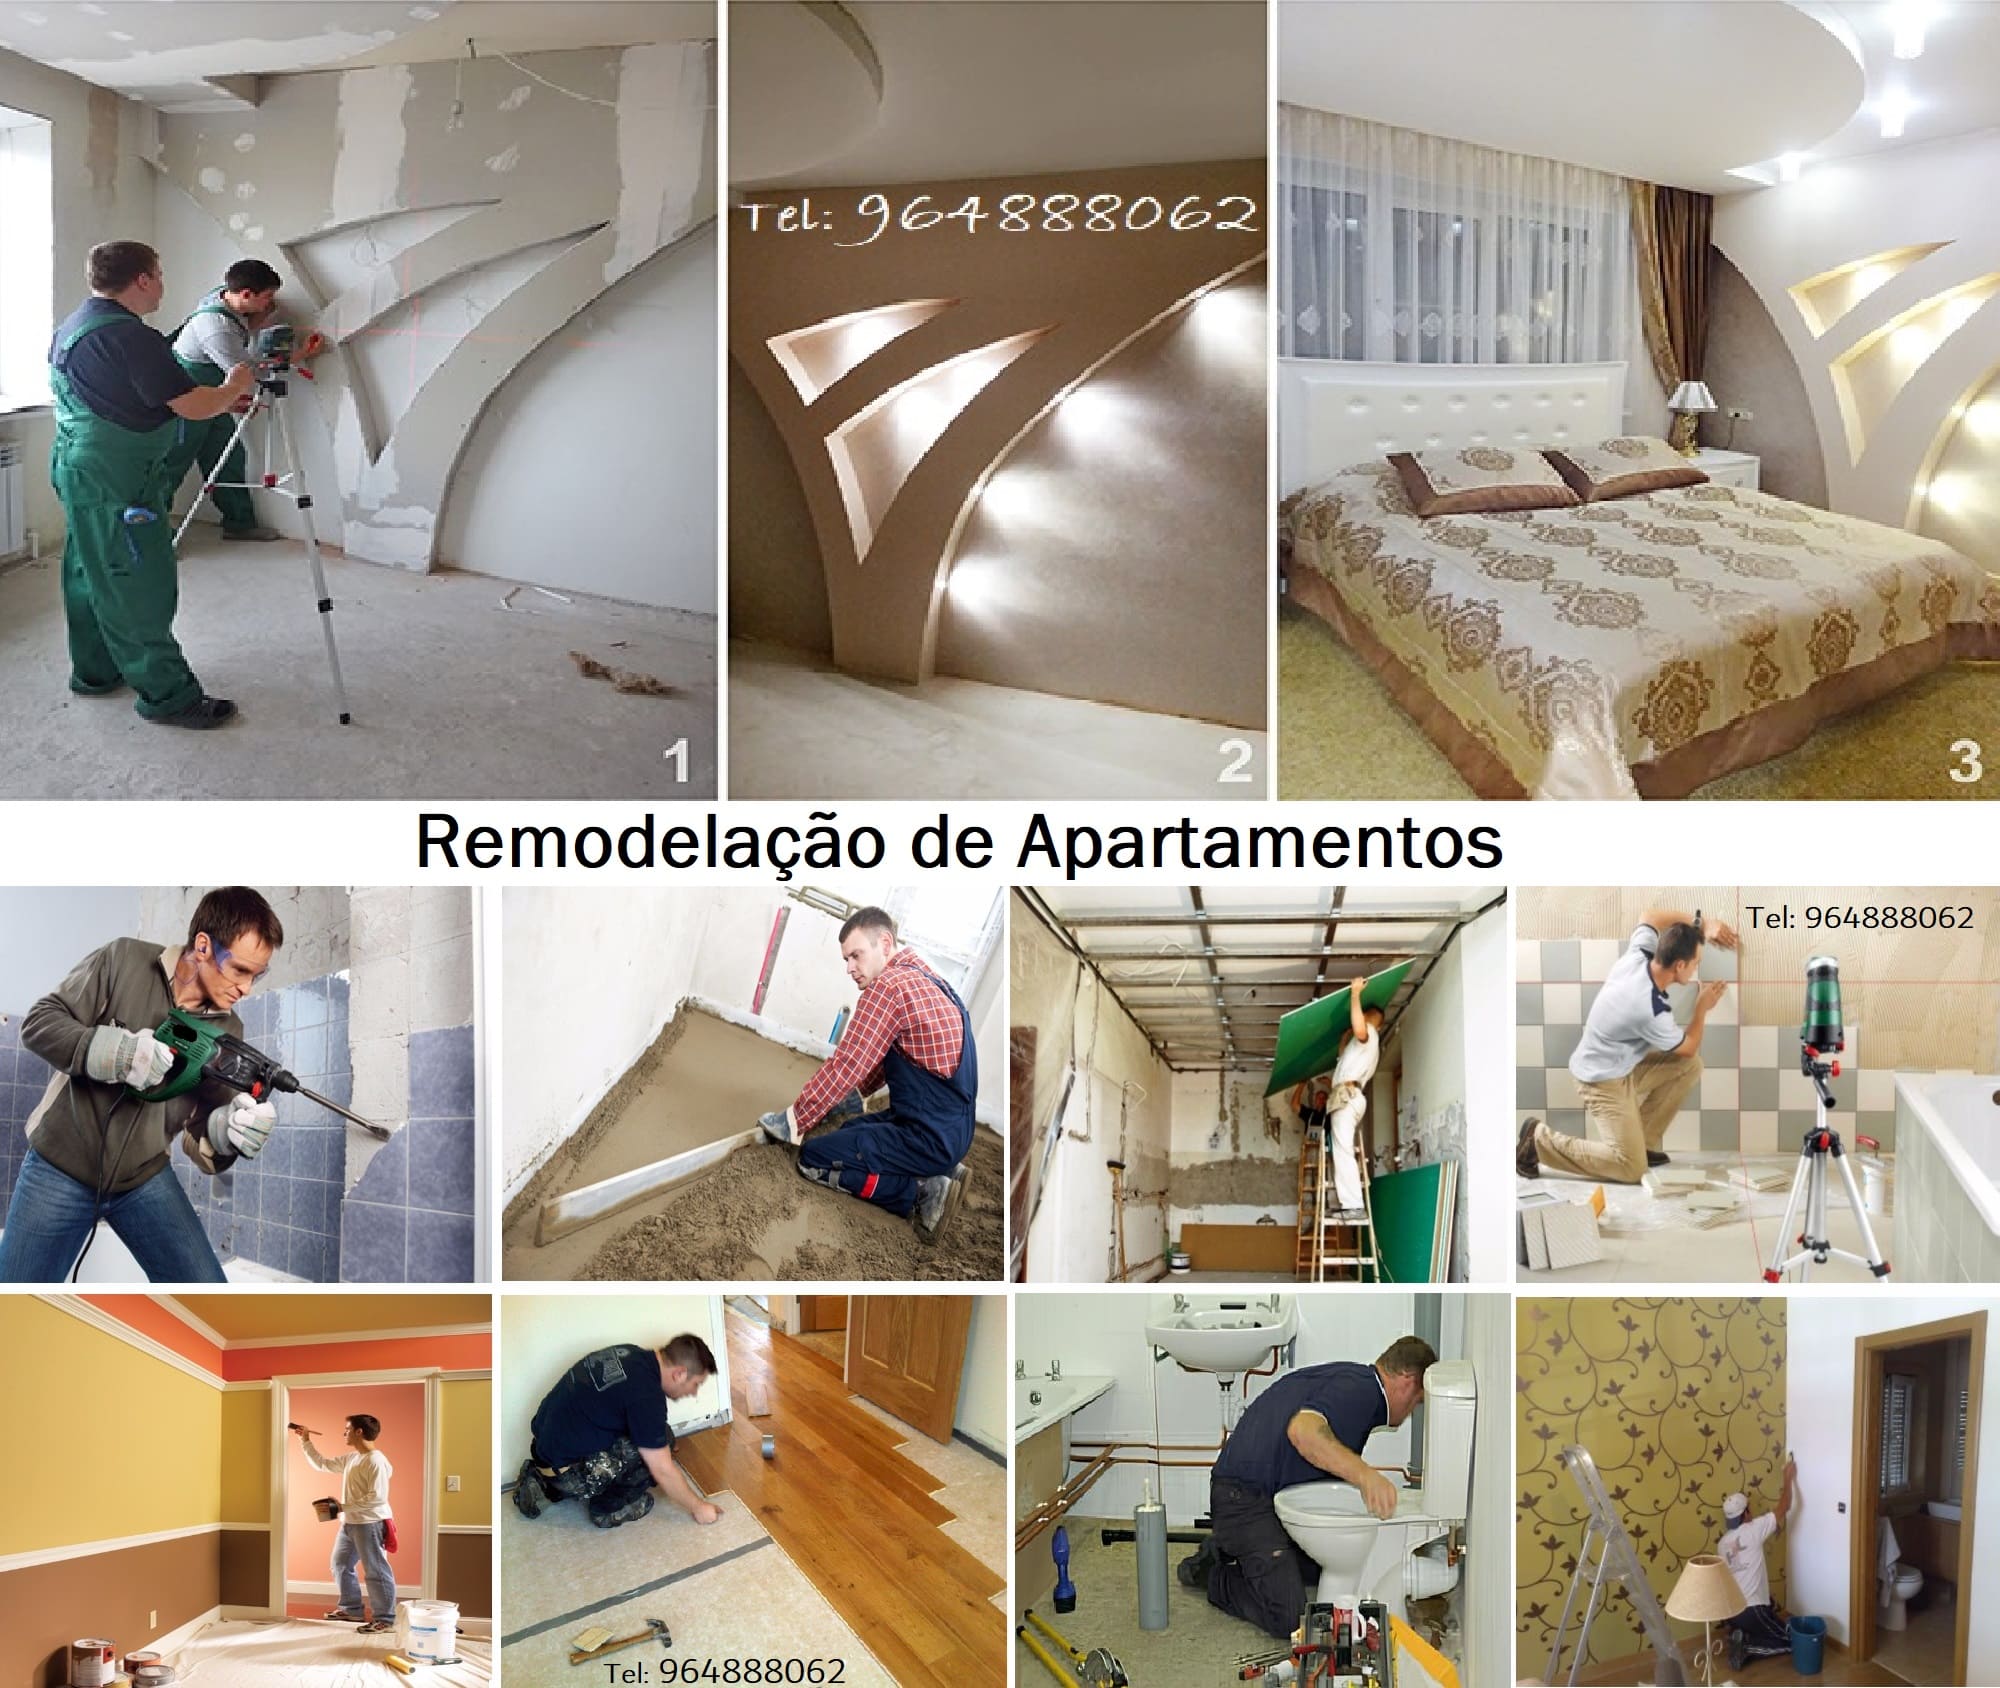 Remodelação de Apartamentos / Casas, desde 100€/m2